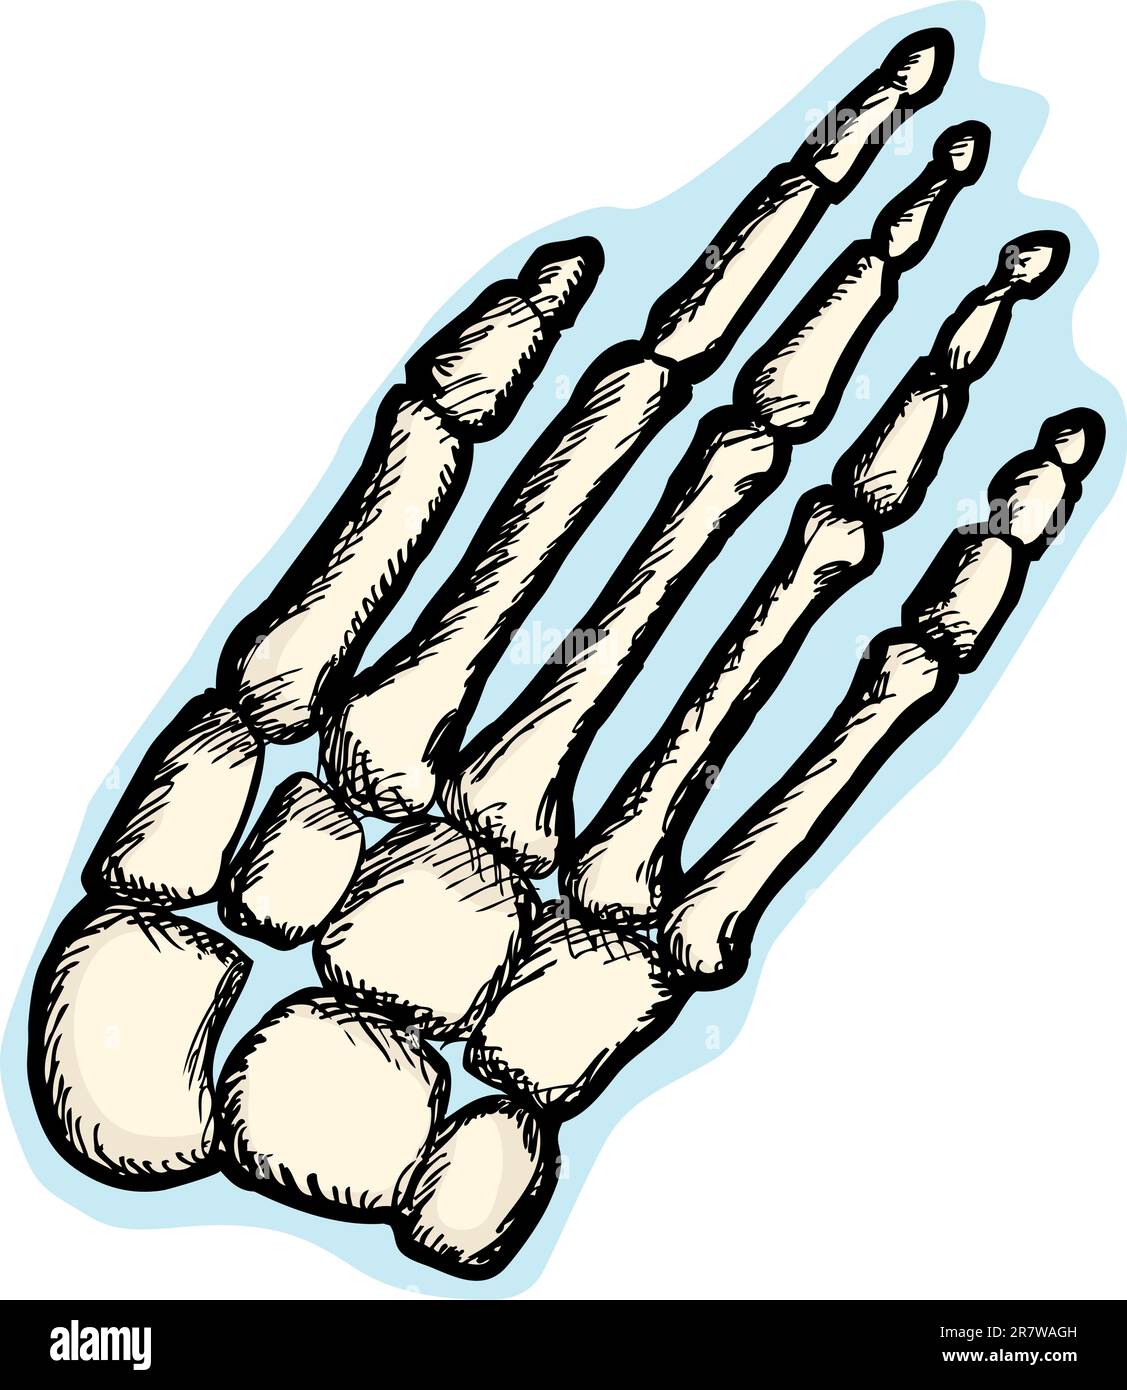 Illustrazione della mano umana struttura scheletrica Illustrazione Vettoriale